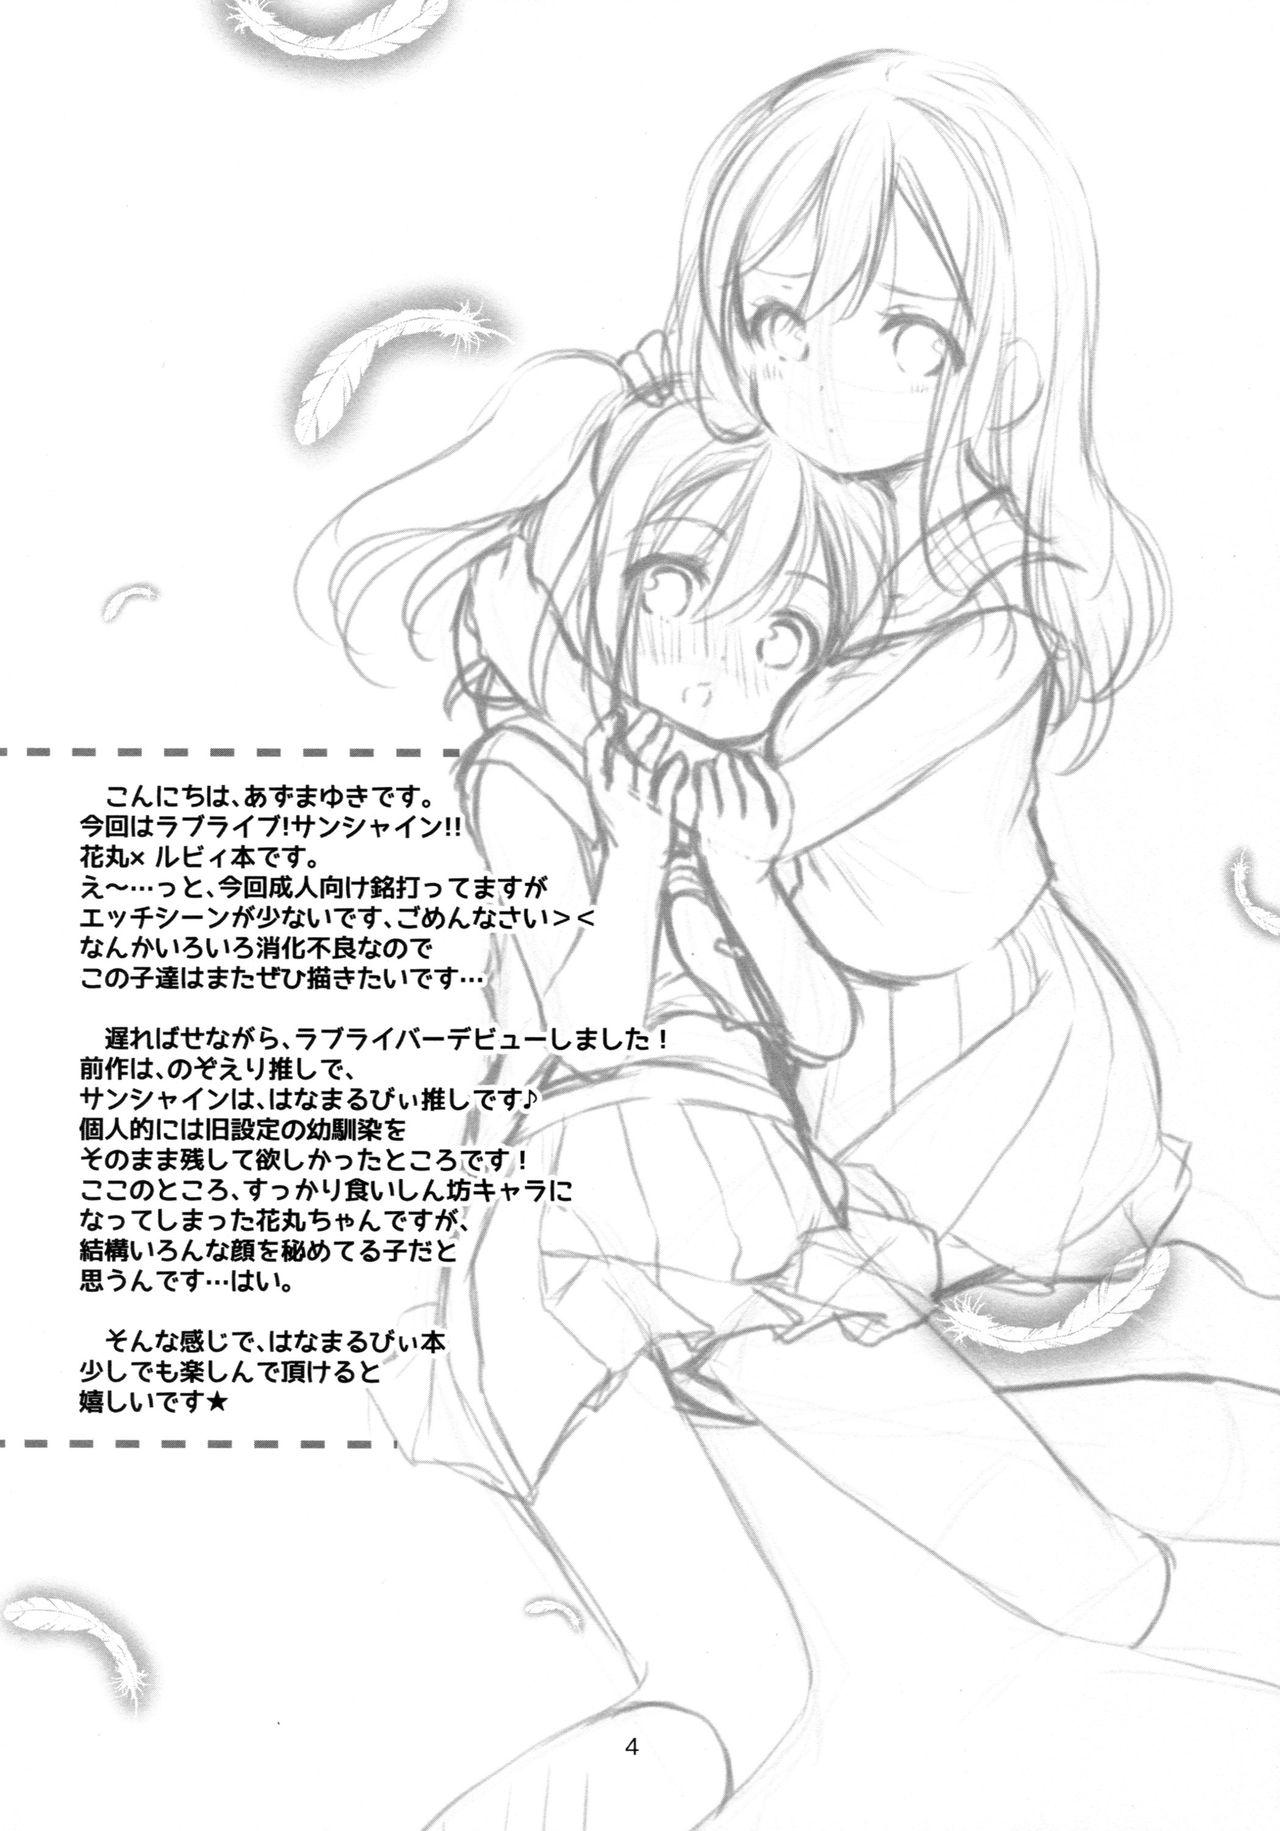 (CT28) [Imomuya Honpo - Singleton (Azuma Yuki)] Ruby-chan wa Maru no Mono zura! | Ruby-chan belongs to Maru zura! (Love Live! Sunshine!!) [English] {/u/ scanlations} 2